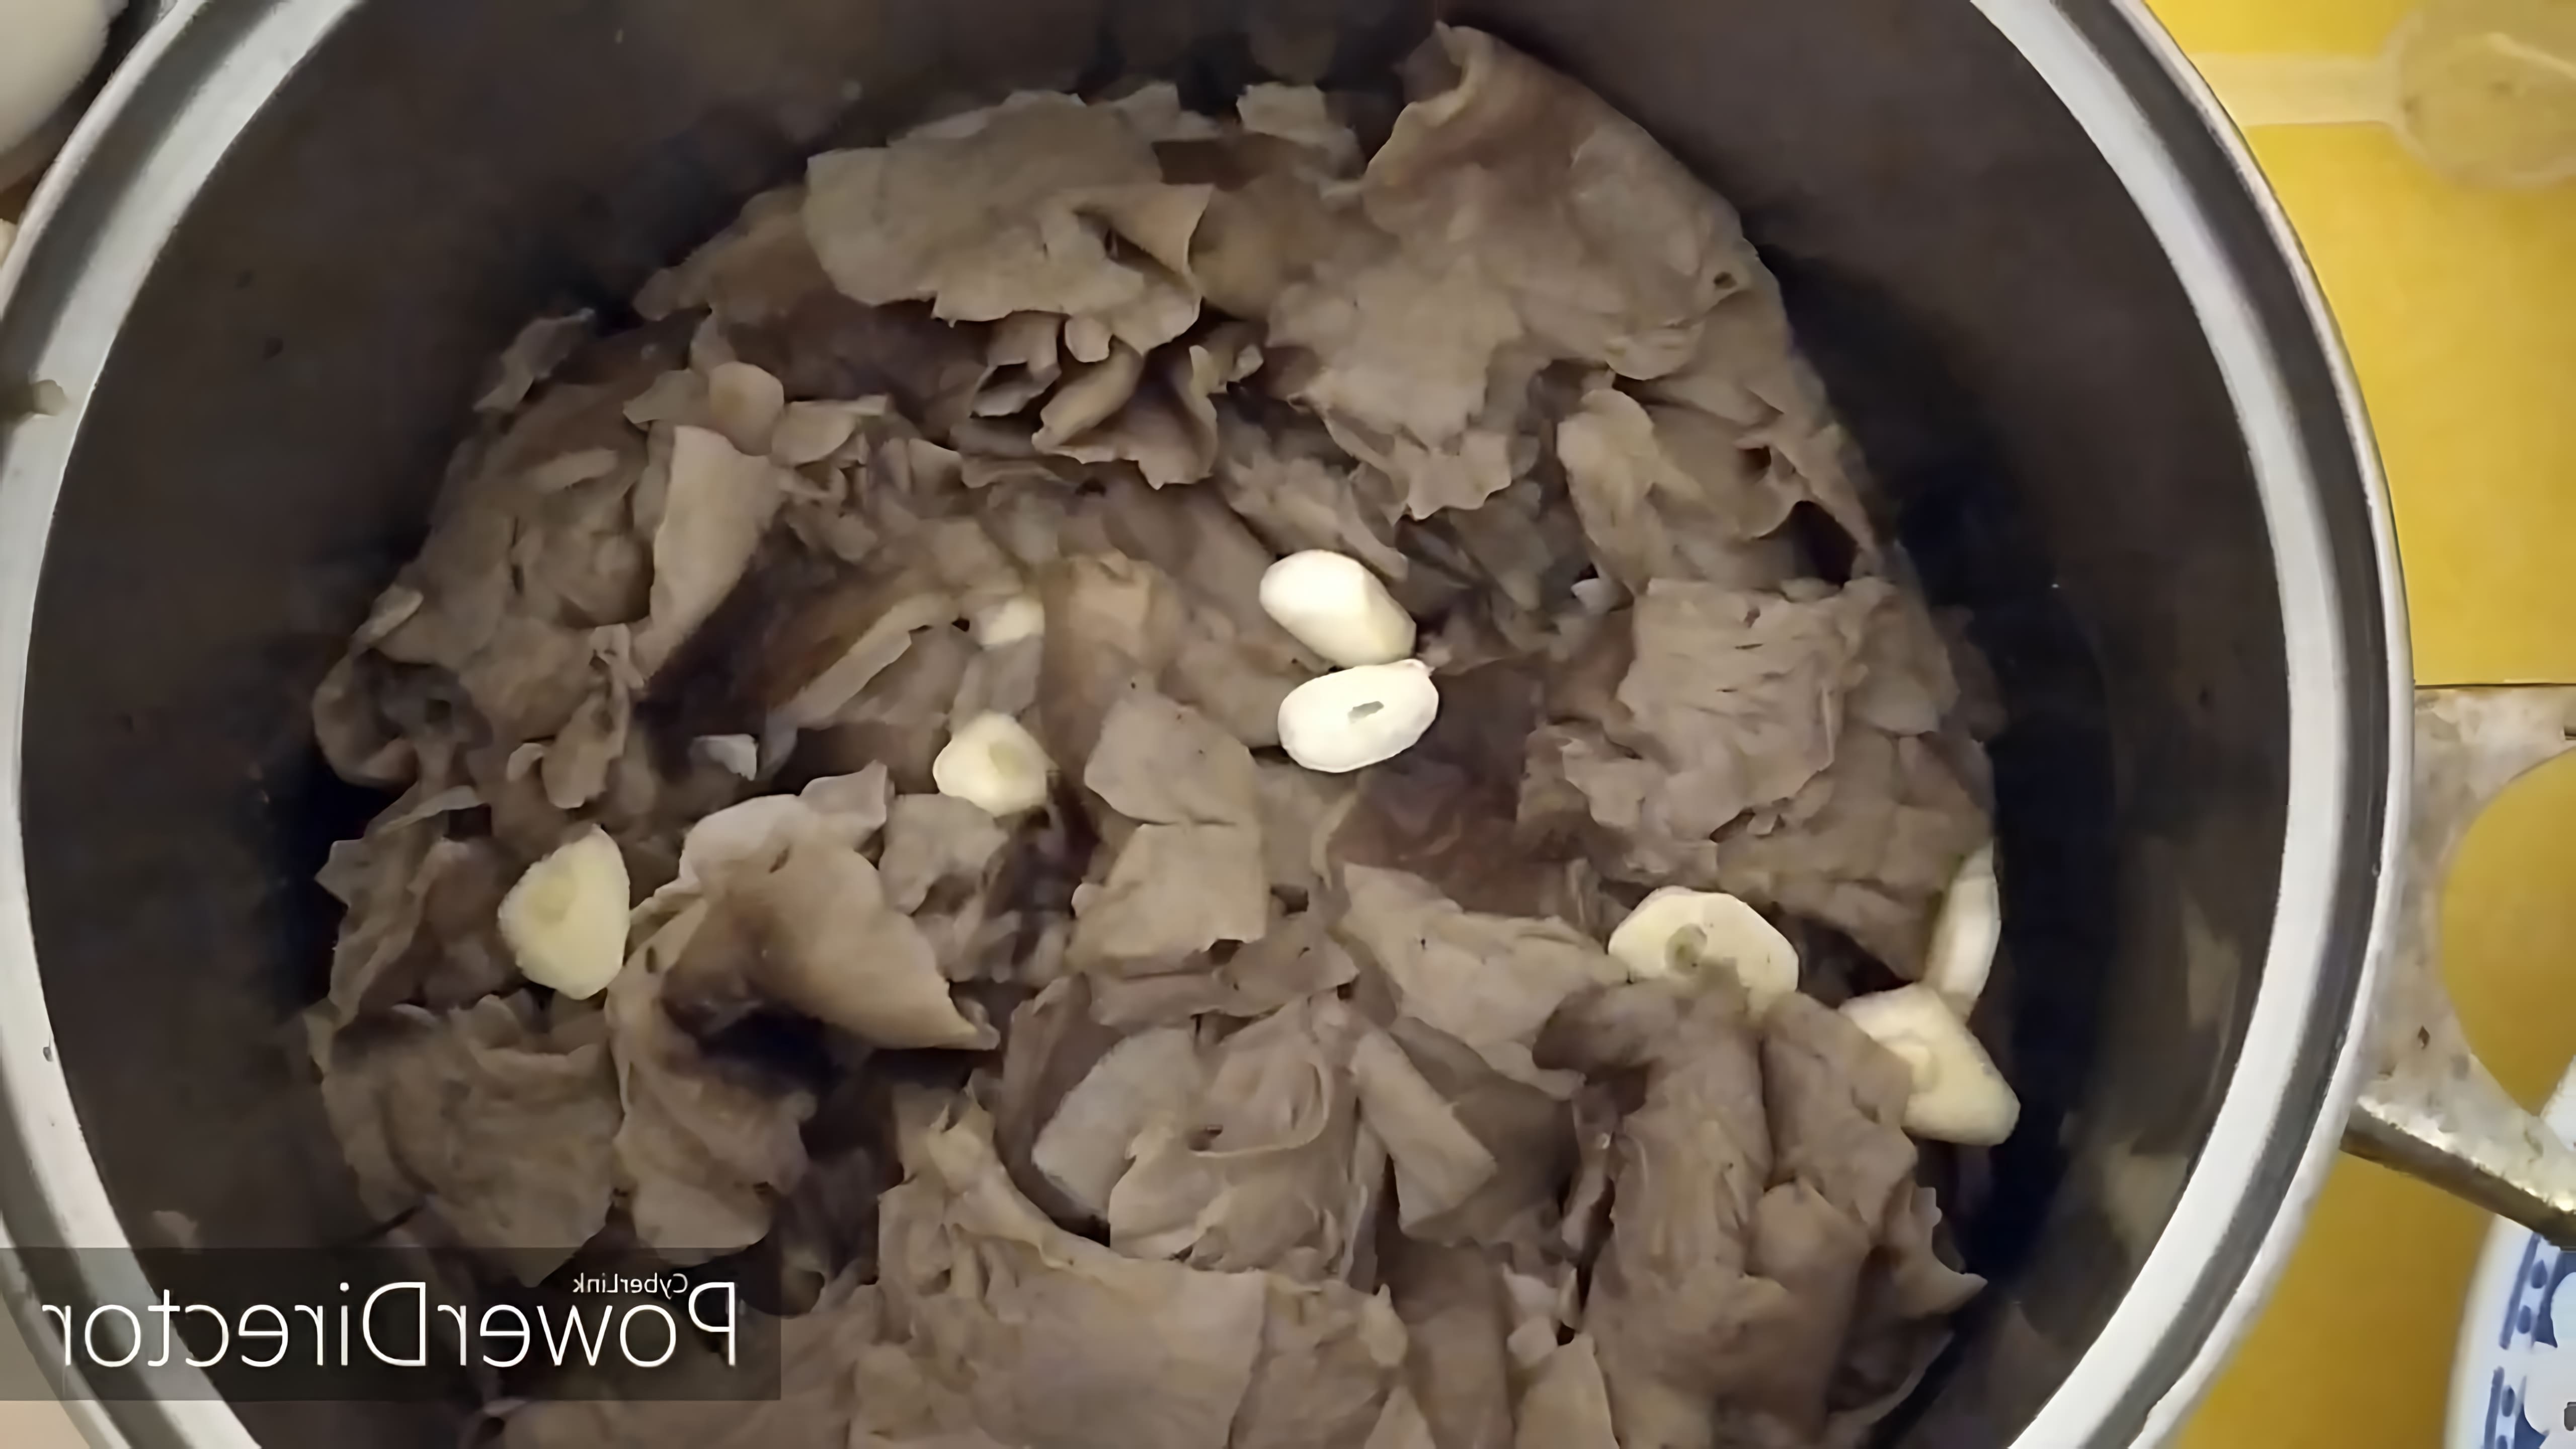 В данном видео демонстрируется процесс приготовления грибов рядовки горячим способом